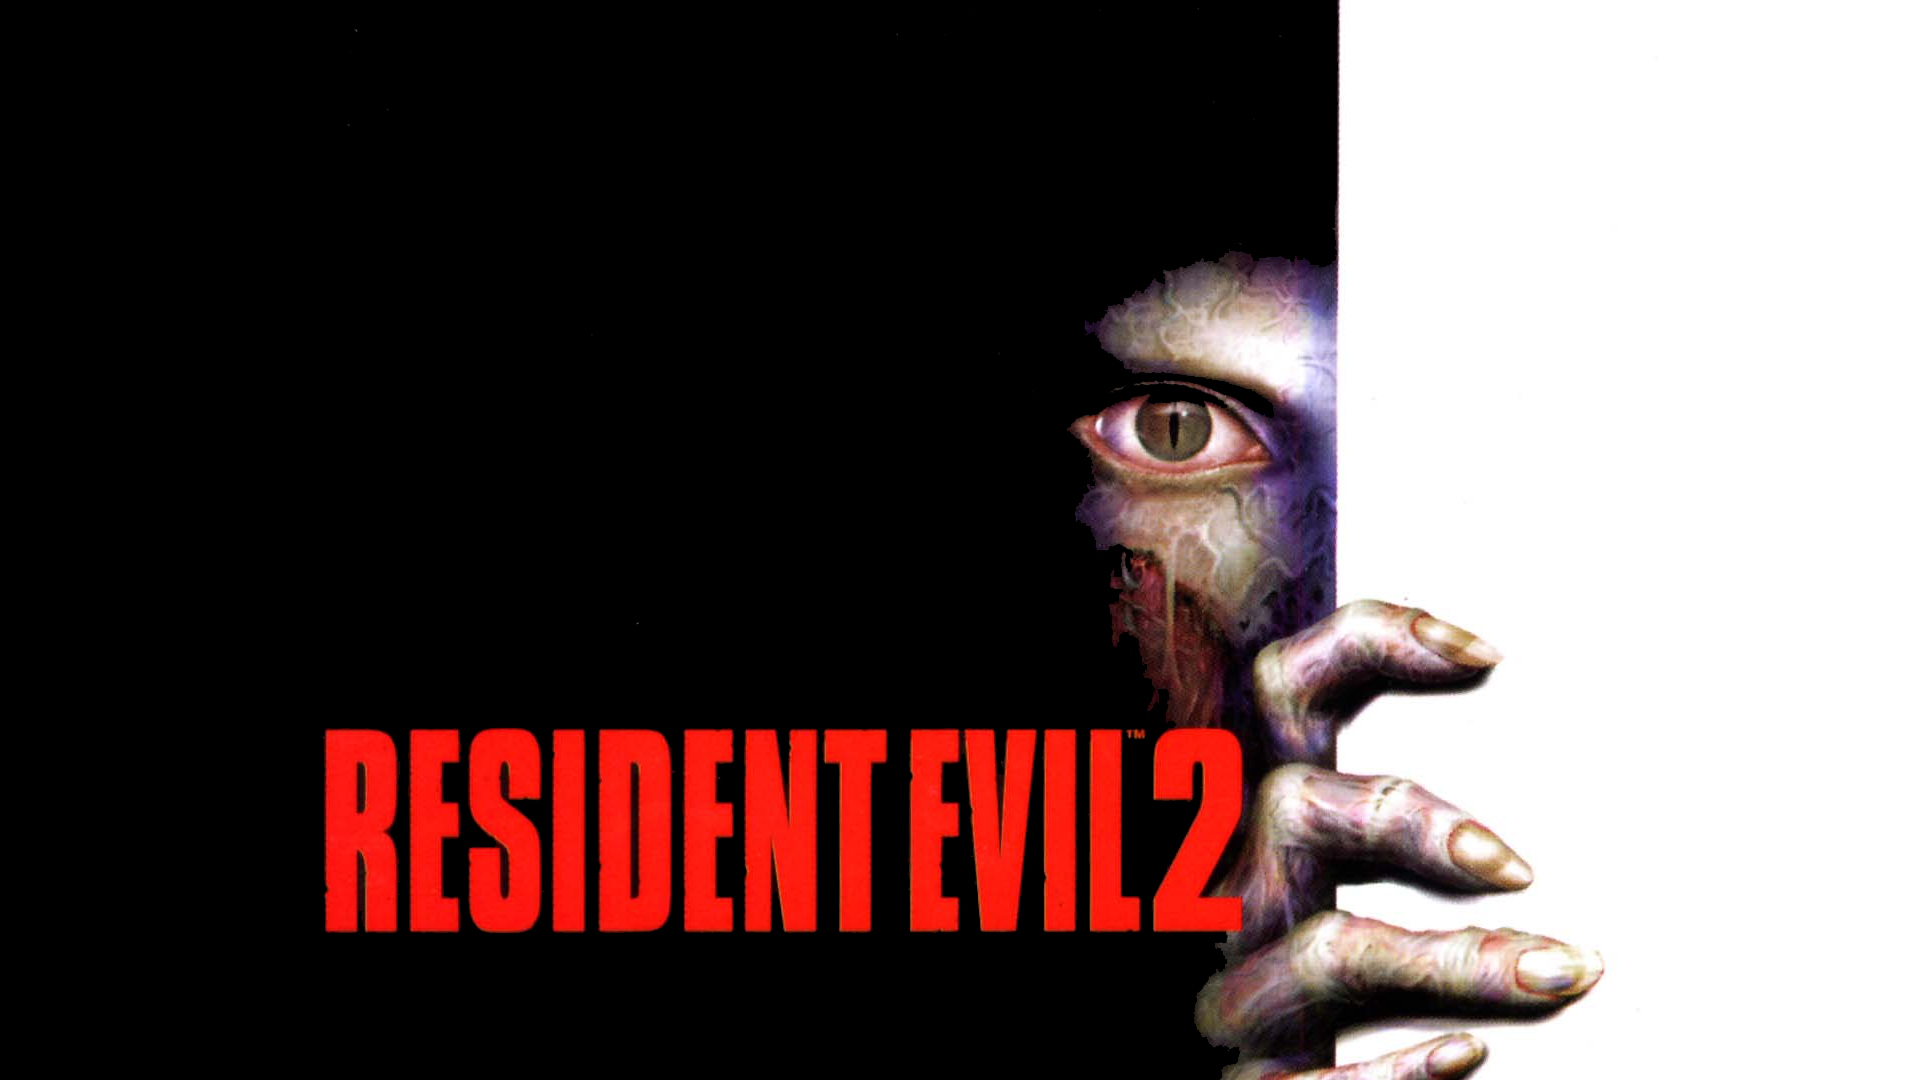 1001 Videojuegos que debes jugar: Resident Evil 2 6